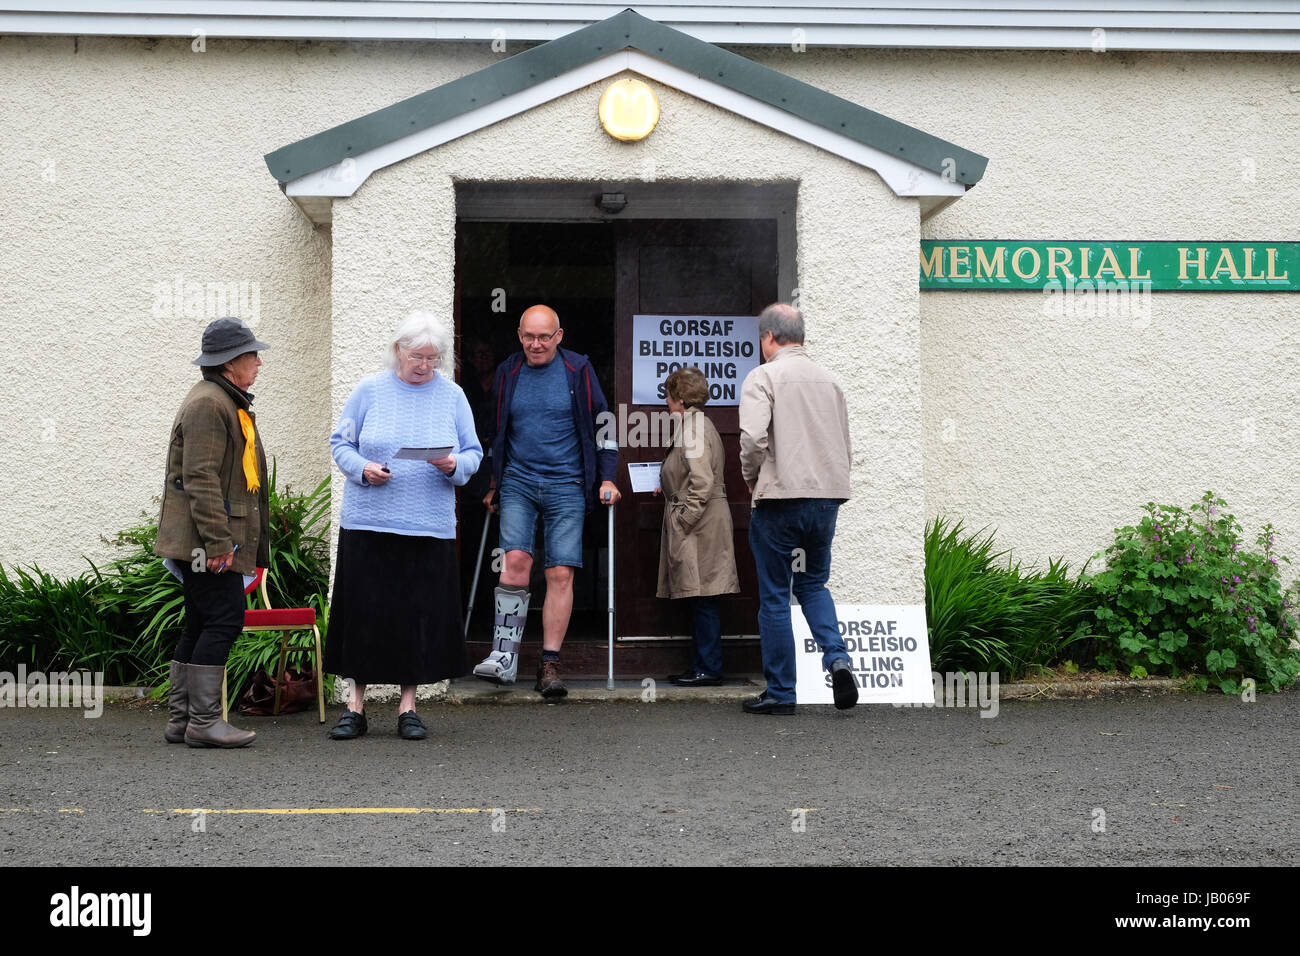 Presteigne, Powys, Wales, UK - Donnerstag, 8. Juni 2017 - Wähler kommen in Regen und Nieselregen ihre Stimmen in britische allgemeine Wahl - Steven Mai / Alamy Live News Stockfoto